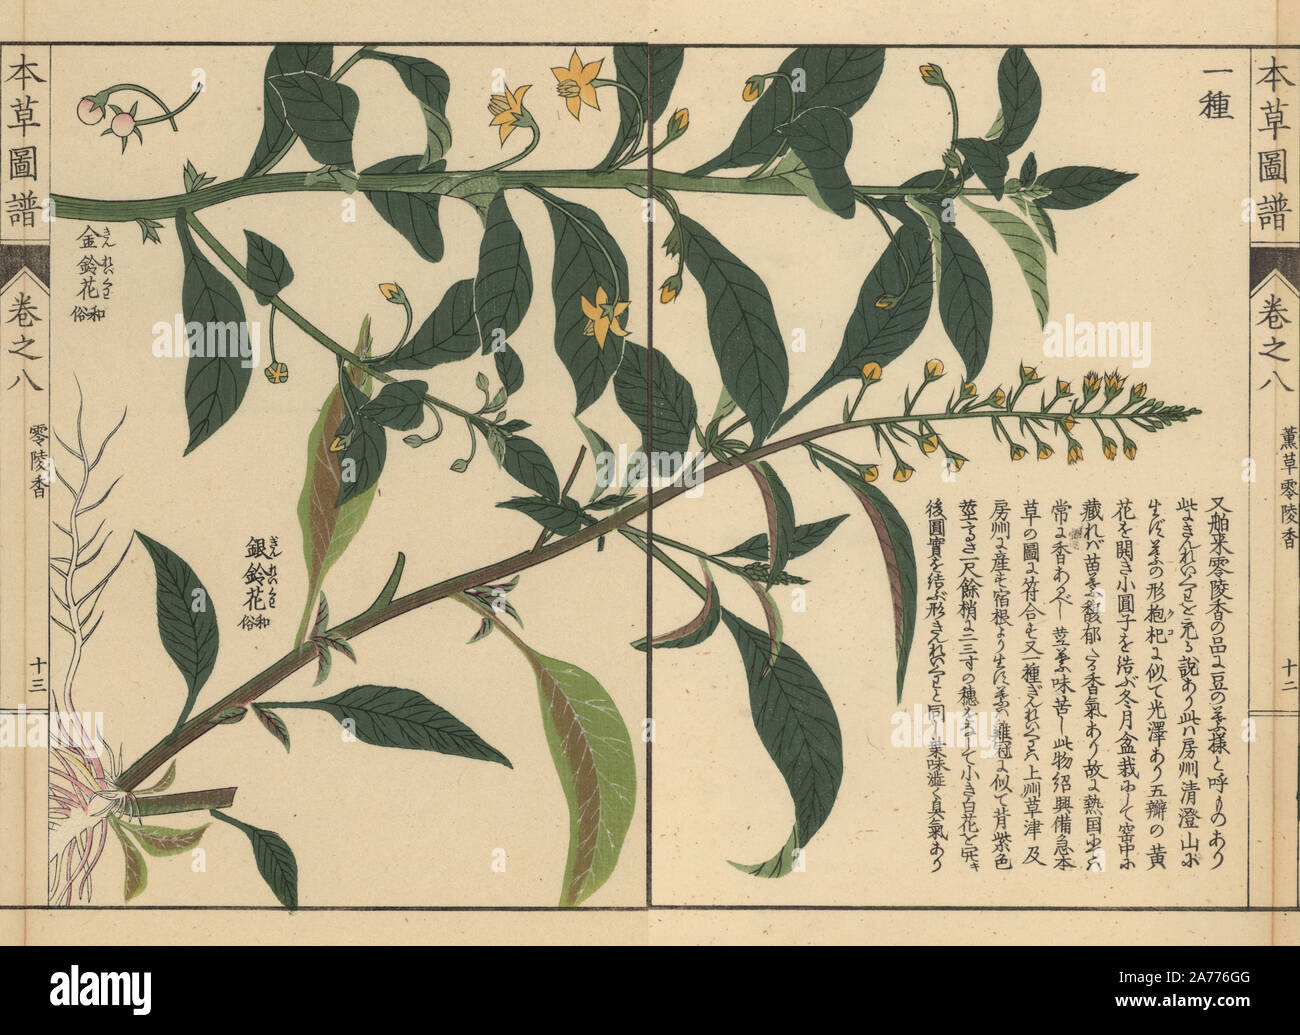 Shikoku, loosestrife Lysimachia sikokiana Miq. e specie loosestrife, Lysimachia decurrens Forst. Stampato a colori woodblock incisione di Kan'en Iwasaki da 'Honzo Zufu", una guida illustrata per piante medicinali, Giappone, 1884. La Iwasaki (1786-1842) era un giapponese botanico, entomologo e zoologo. Egli è stato uno dei primi botanici giapponesi per incorporare la conoscenza occidentale nei suoi studi. Foto Stock